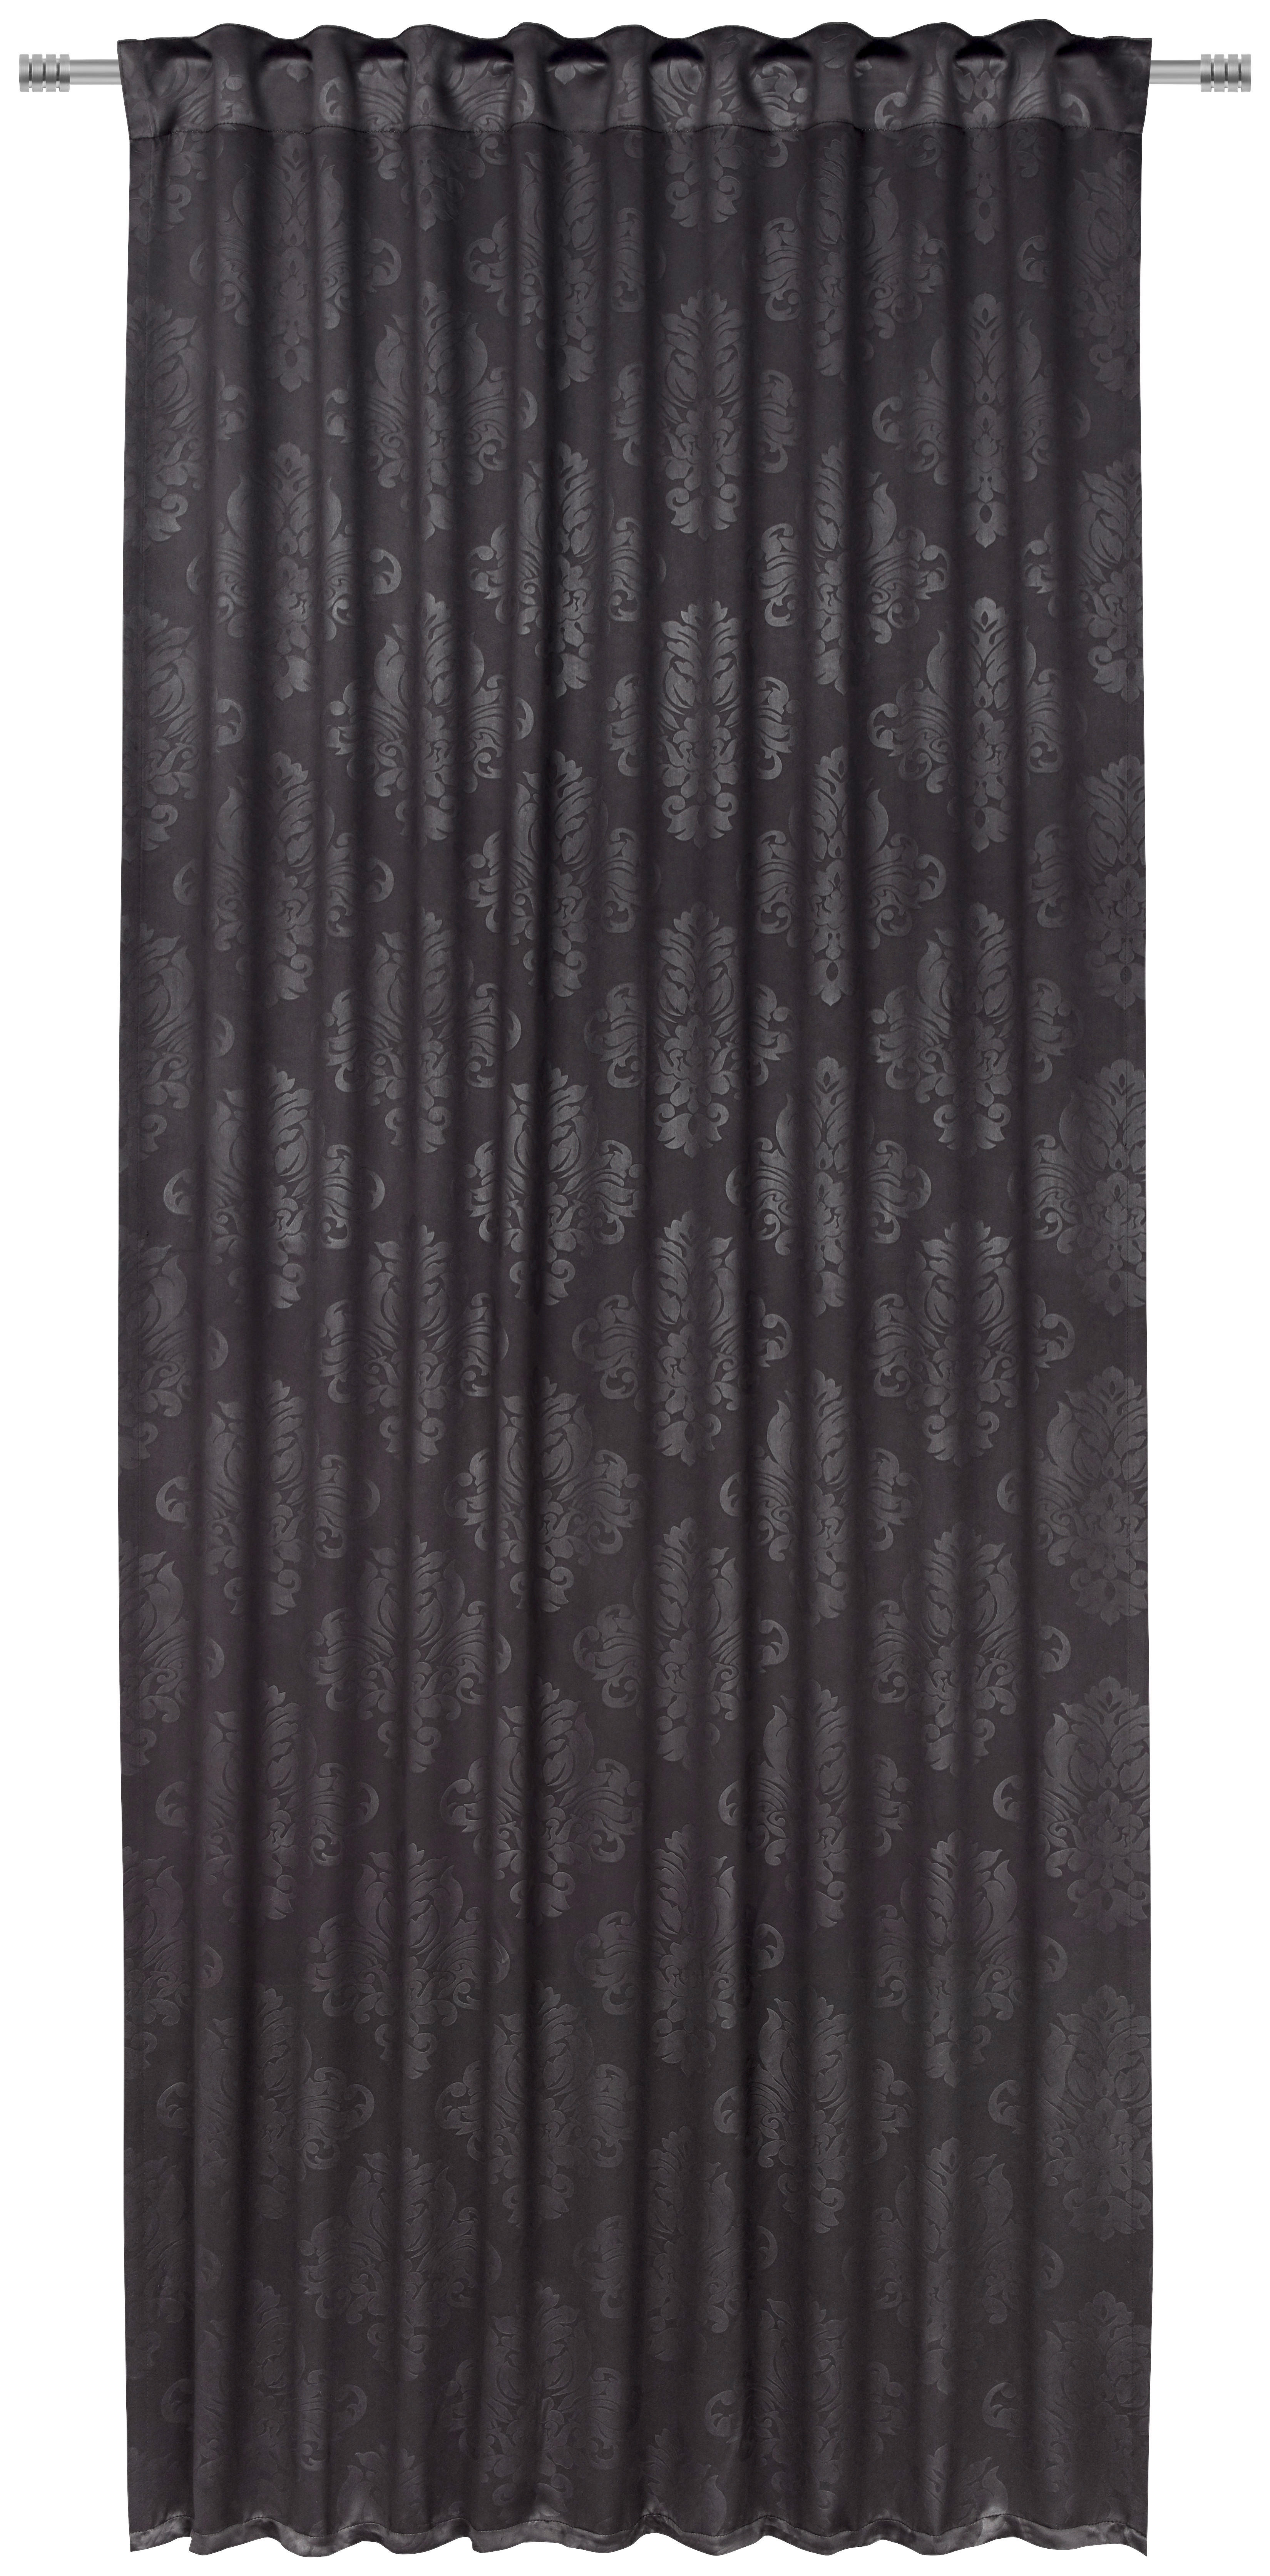 DRAPERIE GATA CONFECȚIONATĂ black-out (nu permite trecerea luminii)  - negru, Konventionell, textil (135/245cm) - Boxxx